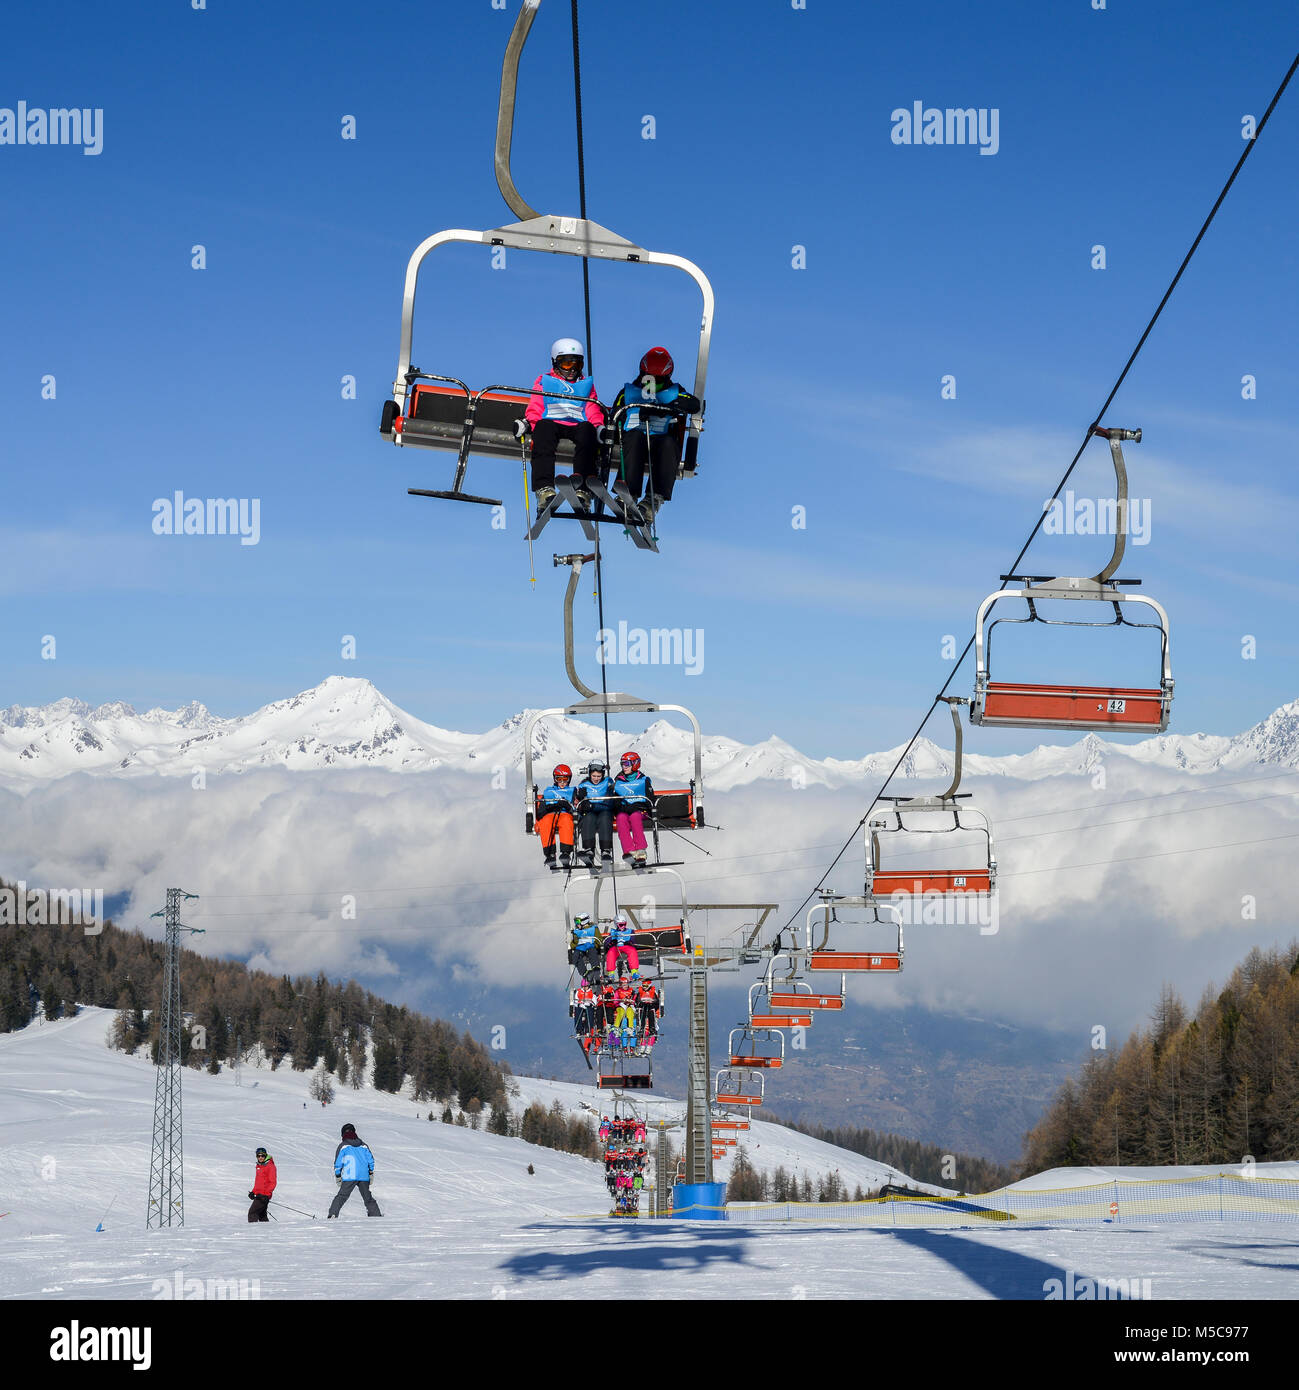 Pila, Aosta, Italien - Feb 19, 2018: Luftaufnahme der norditalienischen Stadt Aosta und Umgebung Valle d'Aosta von Pila Ski Resort - Sessellifte und s Stockfoto